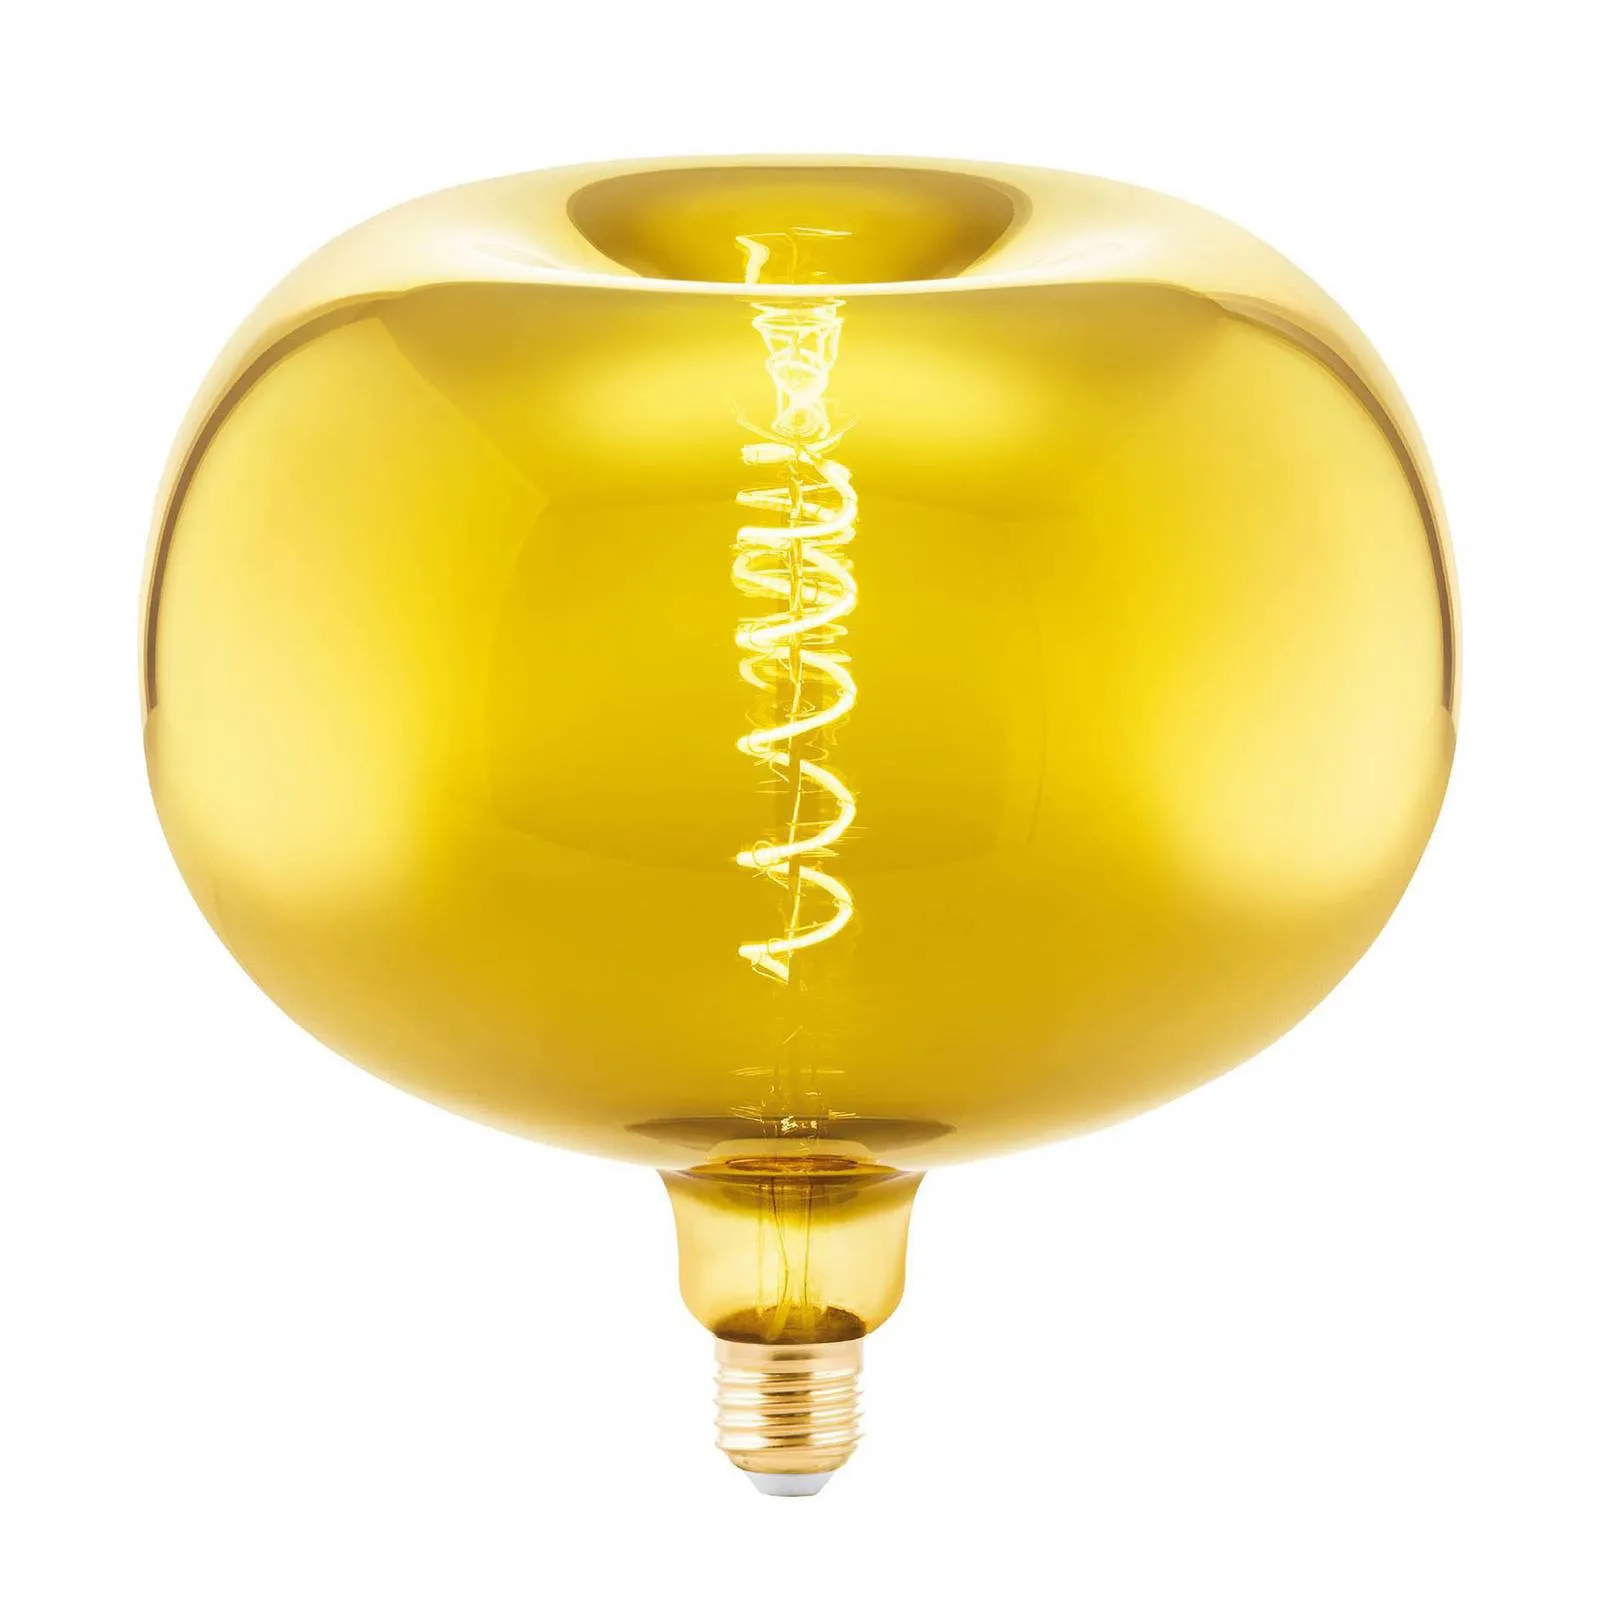  Lampadina LED E27 4W Big Size a mela filamenti oro